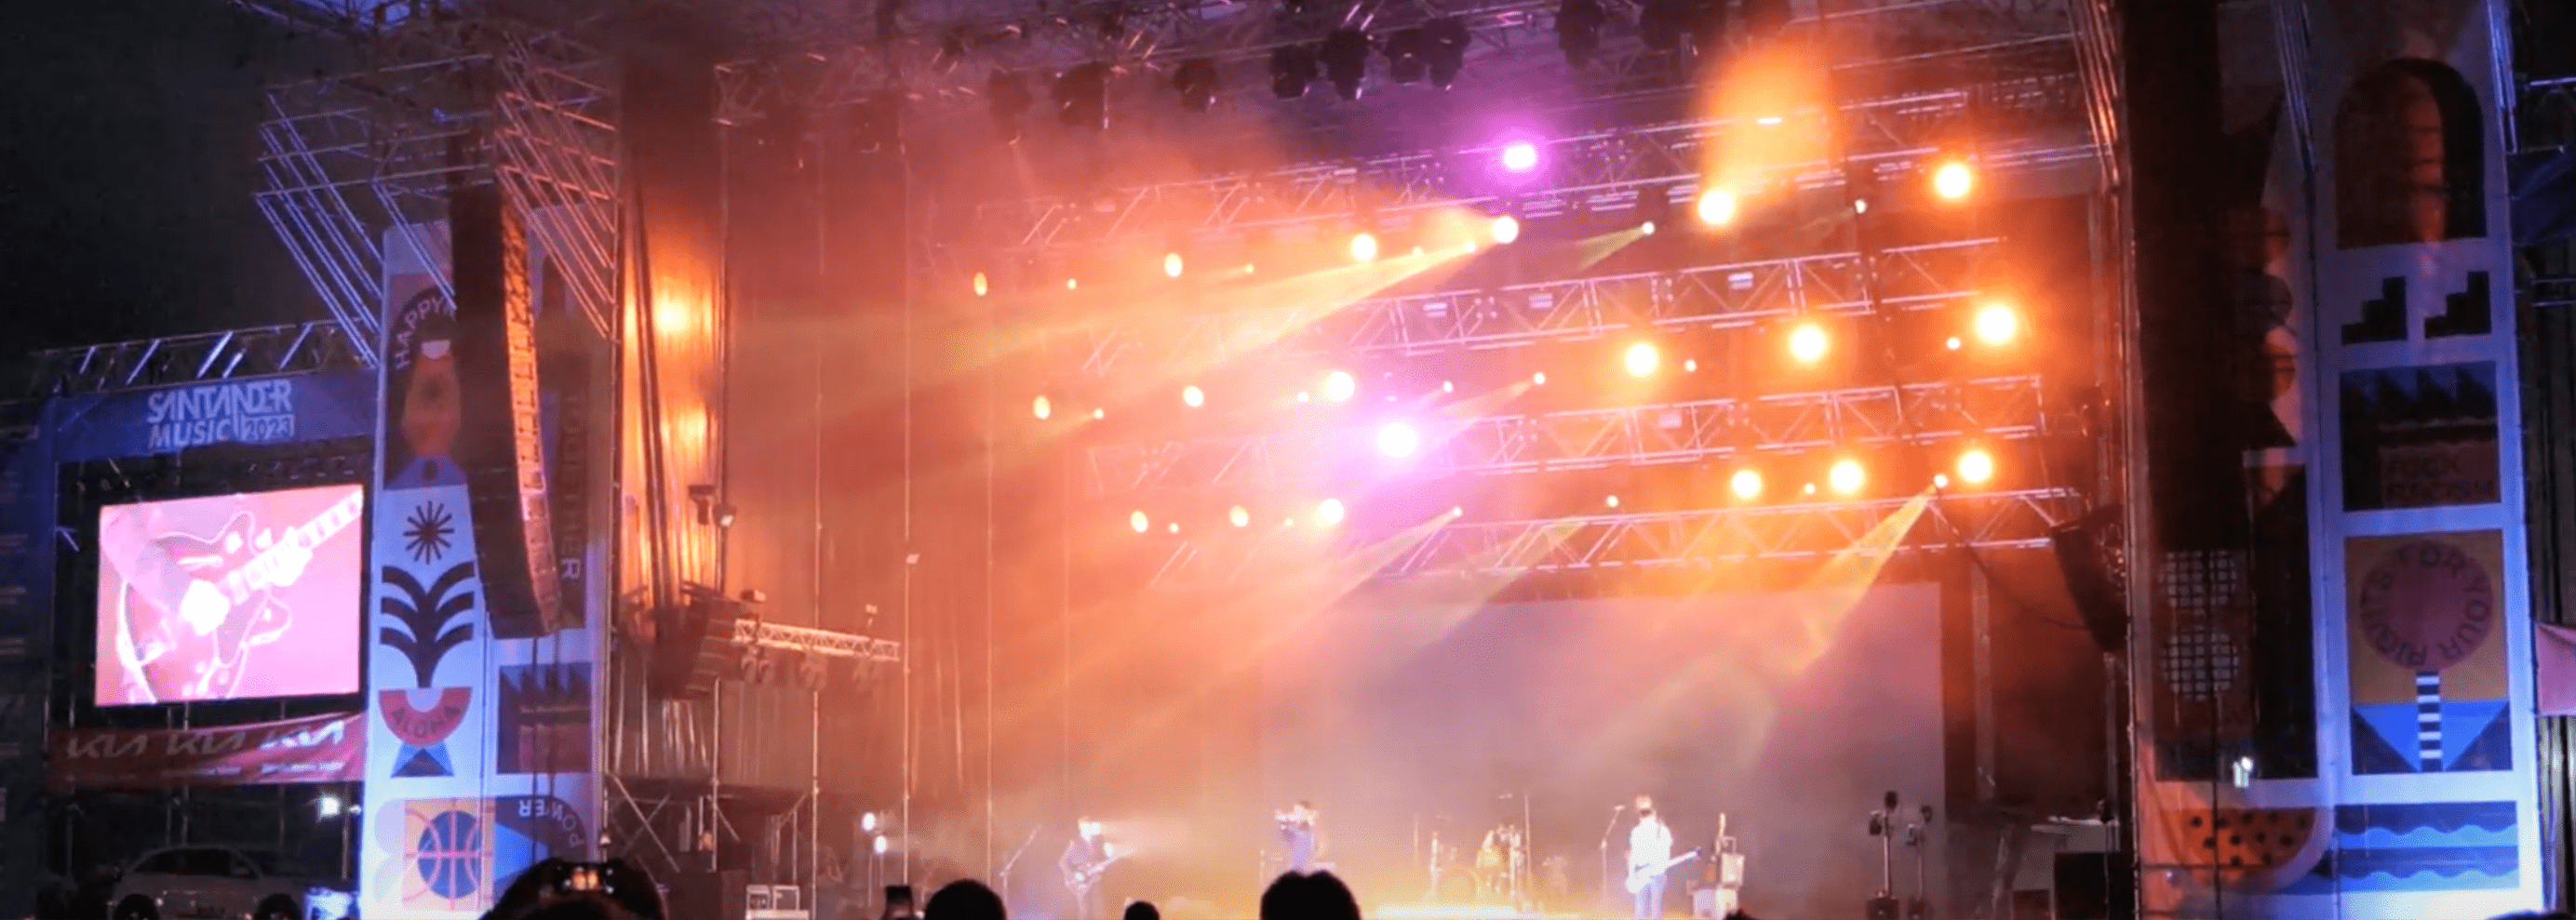 Escenario de festival iluminado por la noche GAM Audiovisuales